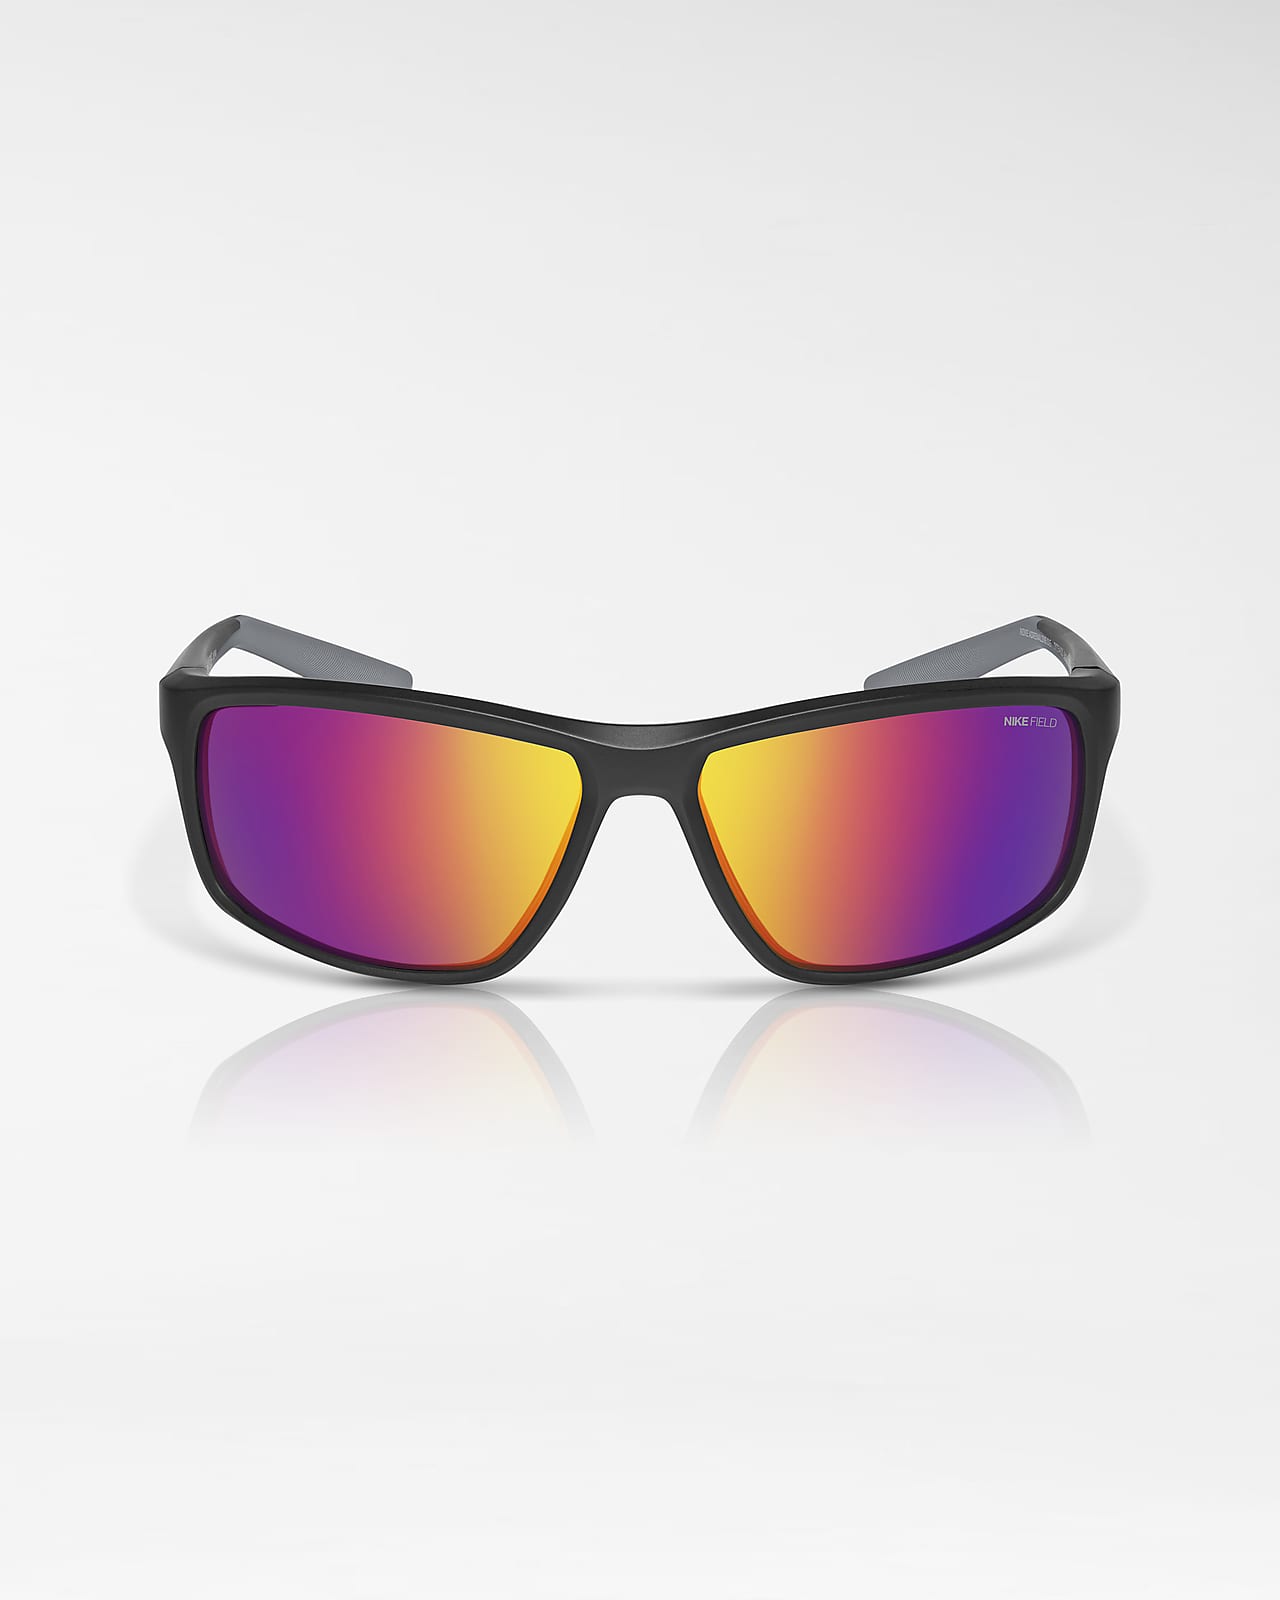 oosten Wijden Kinematica Nike Adrenaline 22 Field Tint Sunglasses. Nike.com